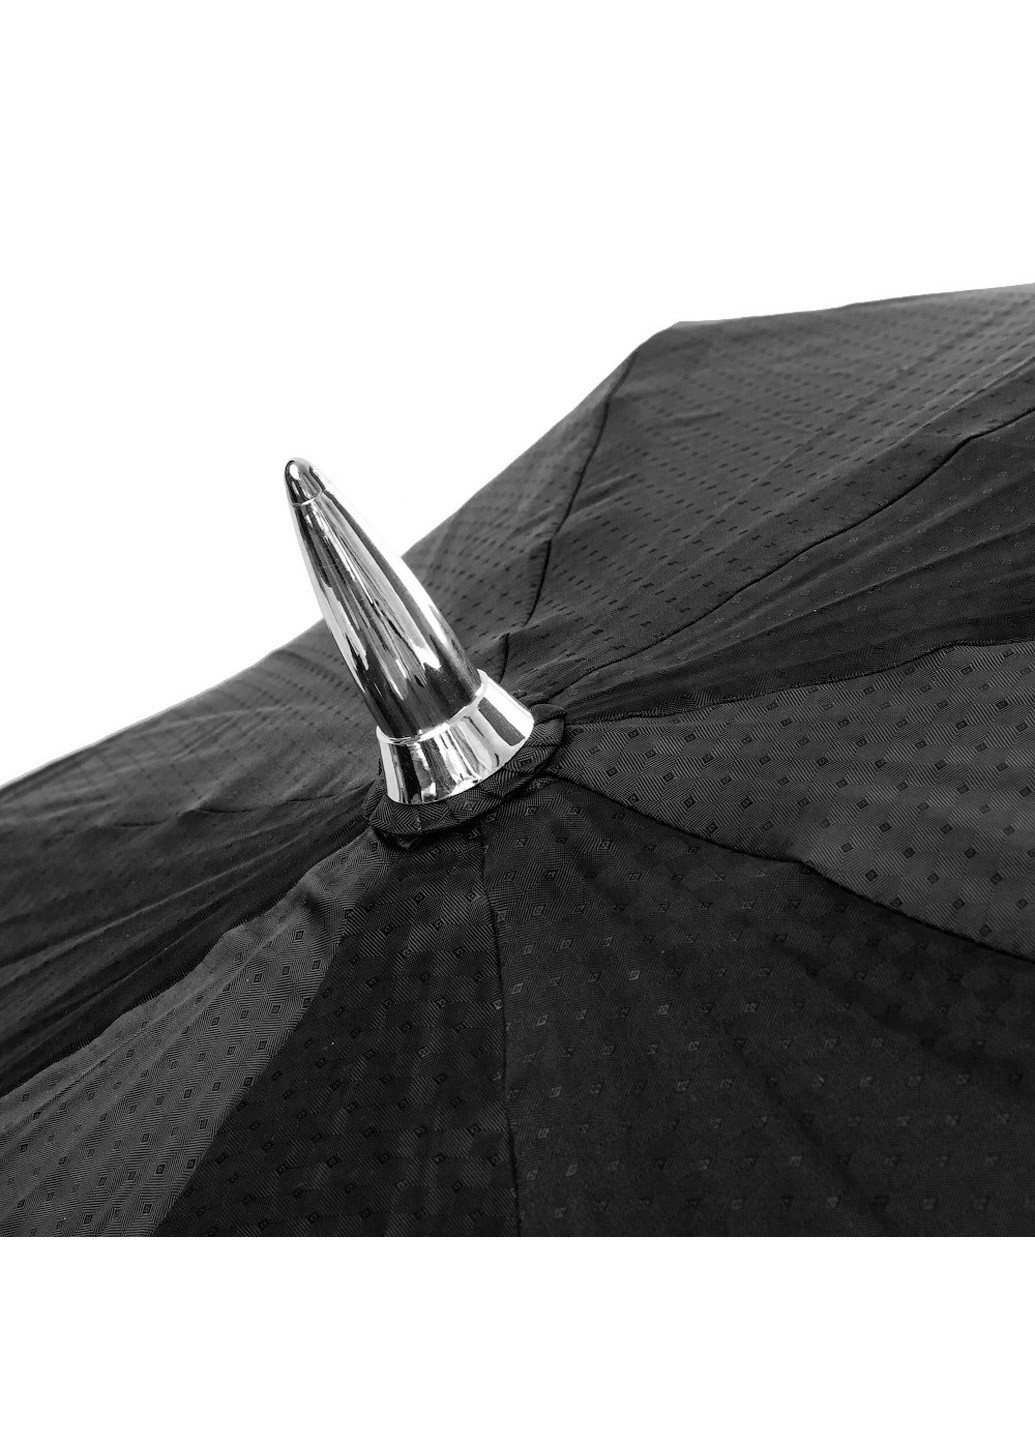 Мужской зонт-трость полуавтомат 118 см FARE (194317312)